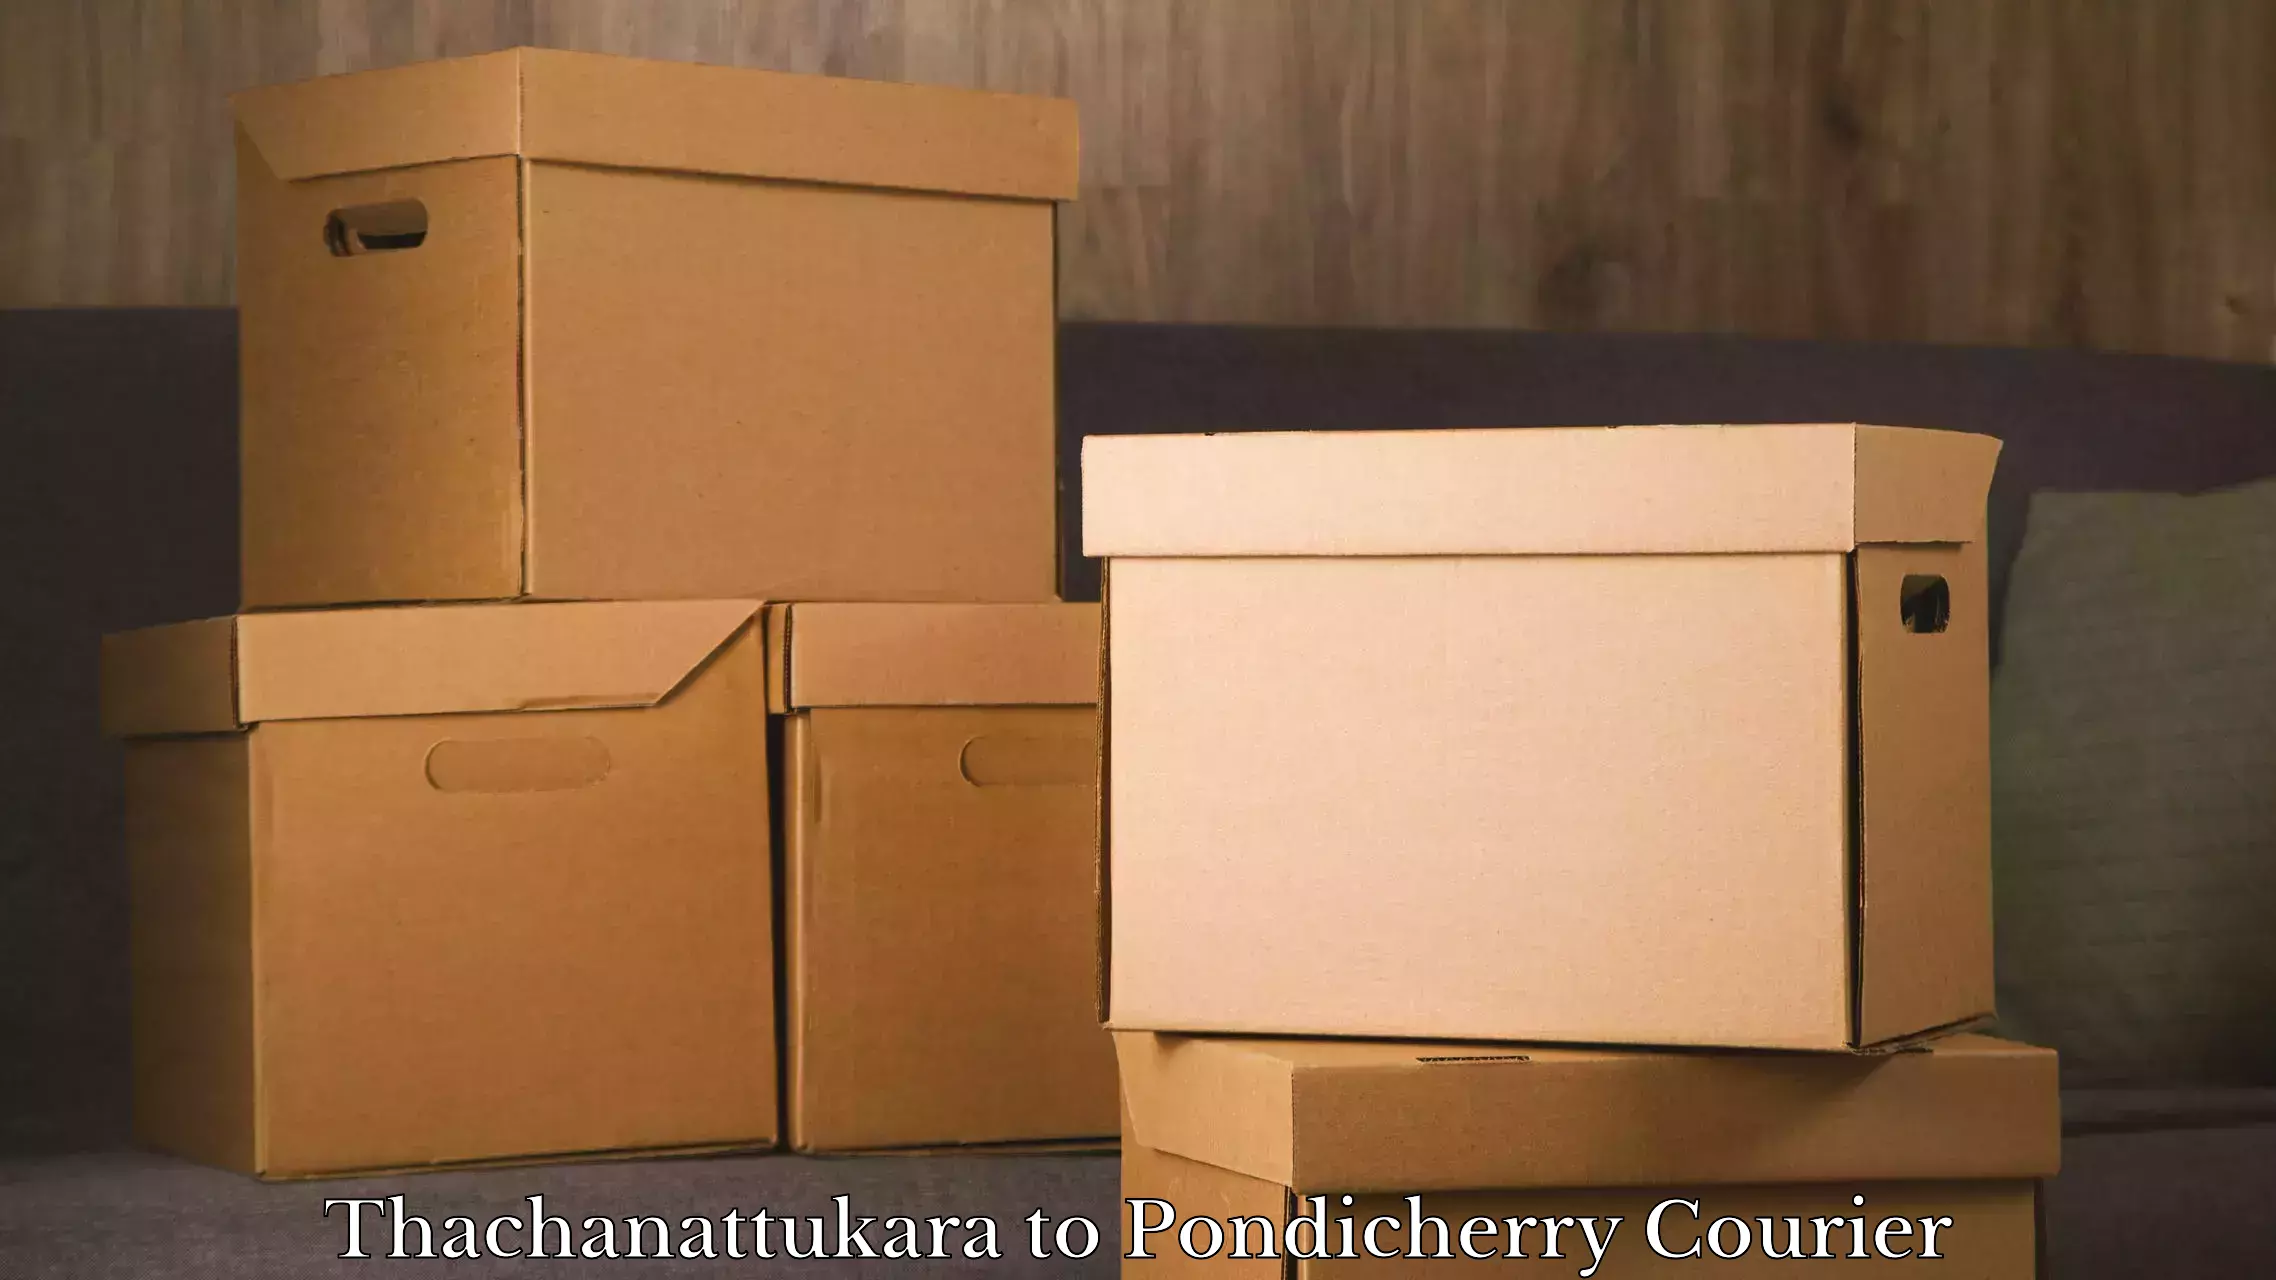 Doorstep luggage collection Thachanattukara to Pondicherry